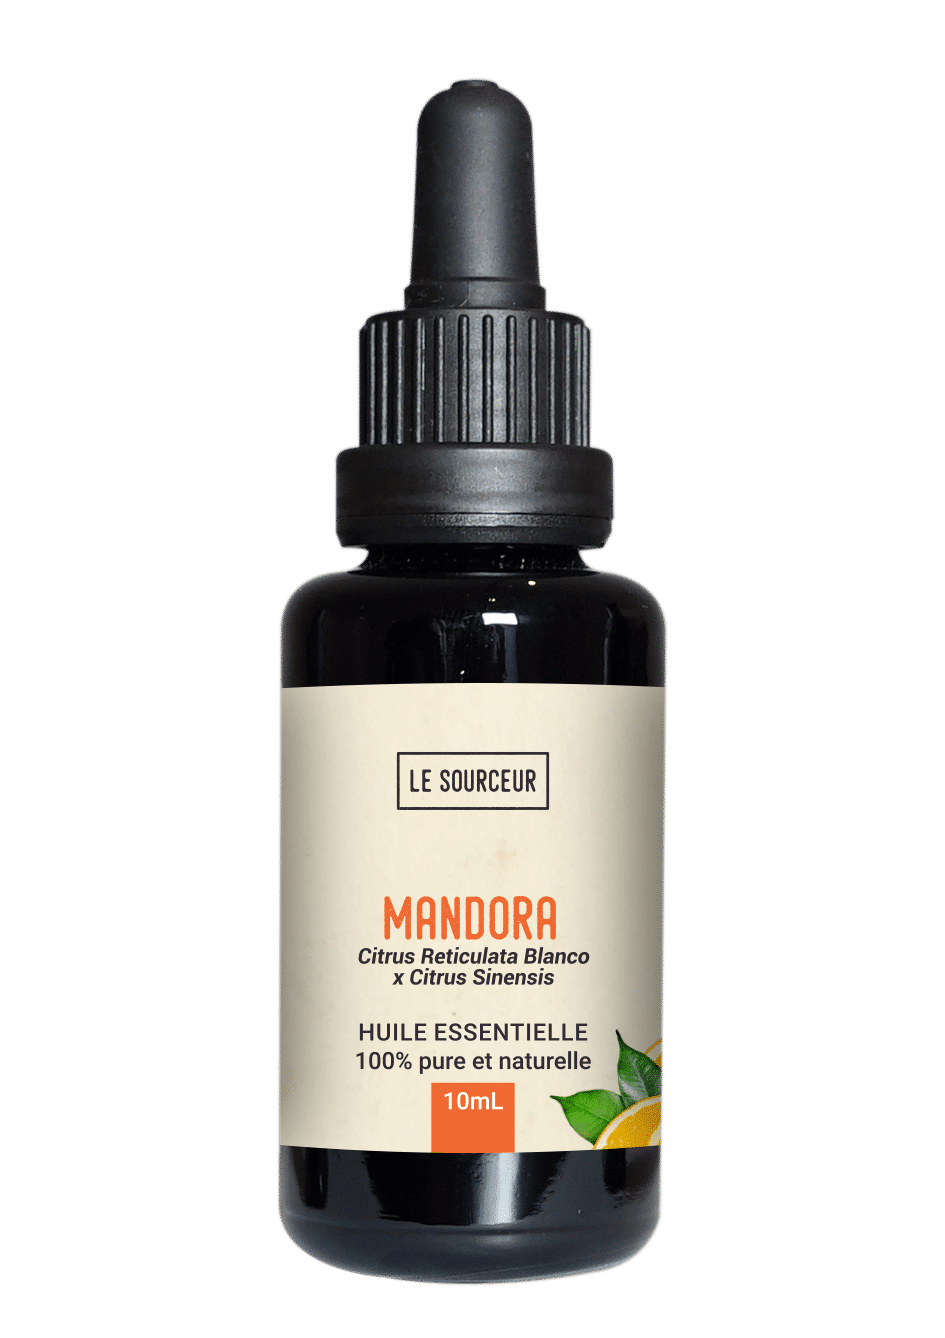 Bottle of Mandora essential oil